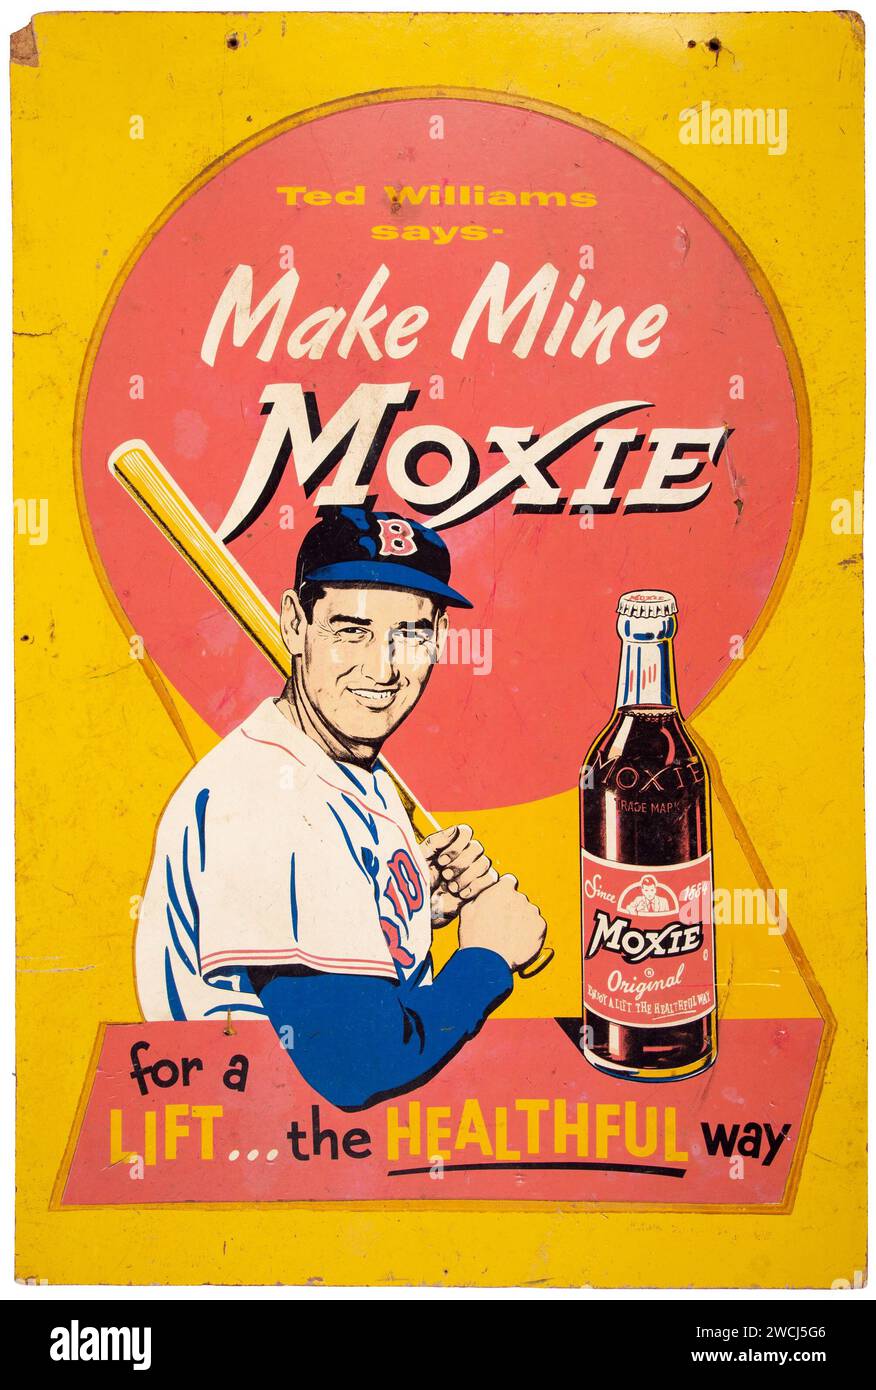 Publicité Moxie des années 1950 avec le joueur de baseball Ted Williams, Vintage Grand panneau publicitaire pour une boisson non alcoolisée - 'Make Mine Moxie'. Banque D'Images